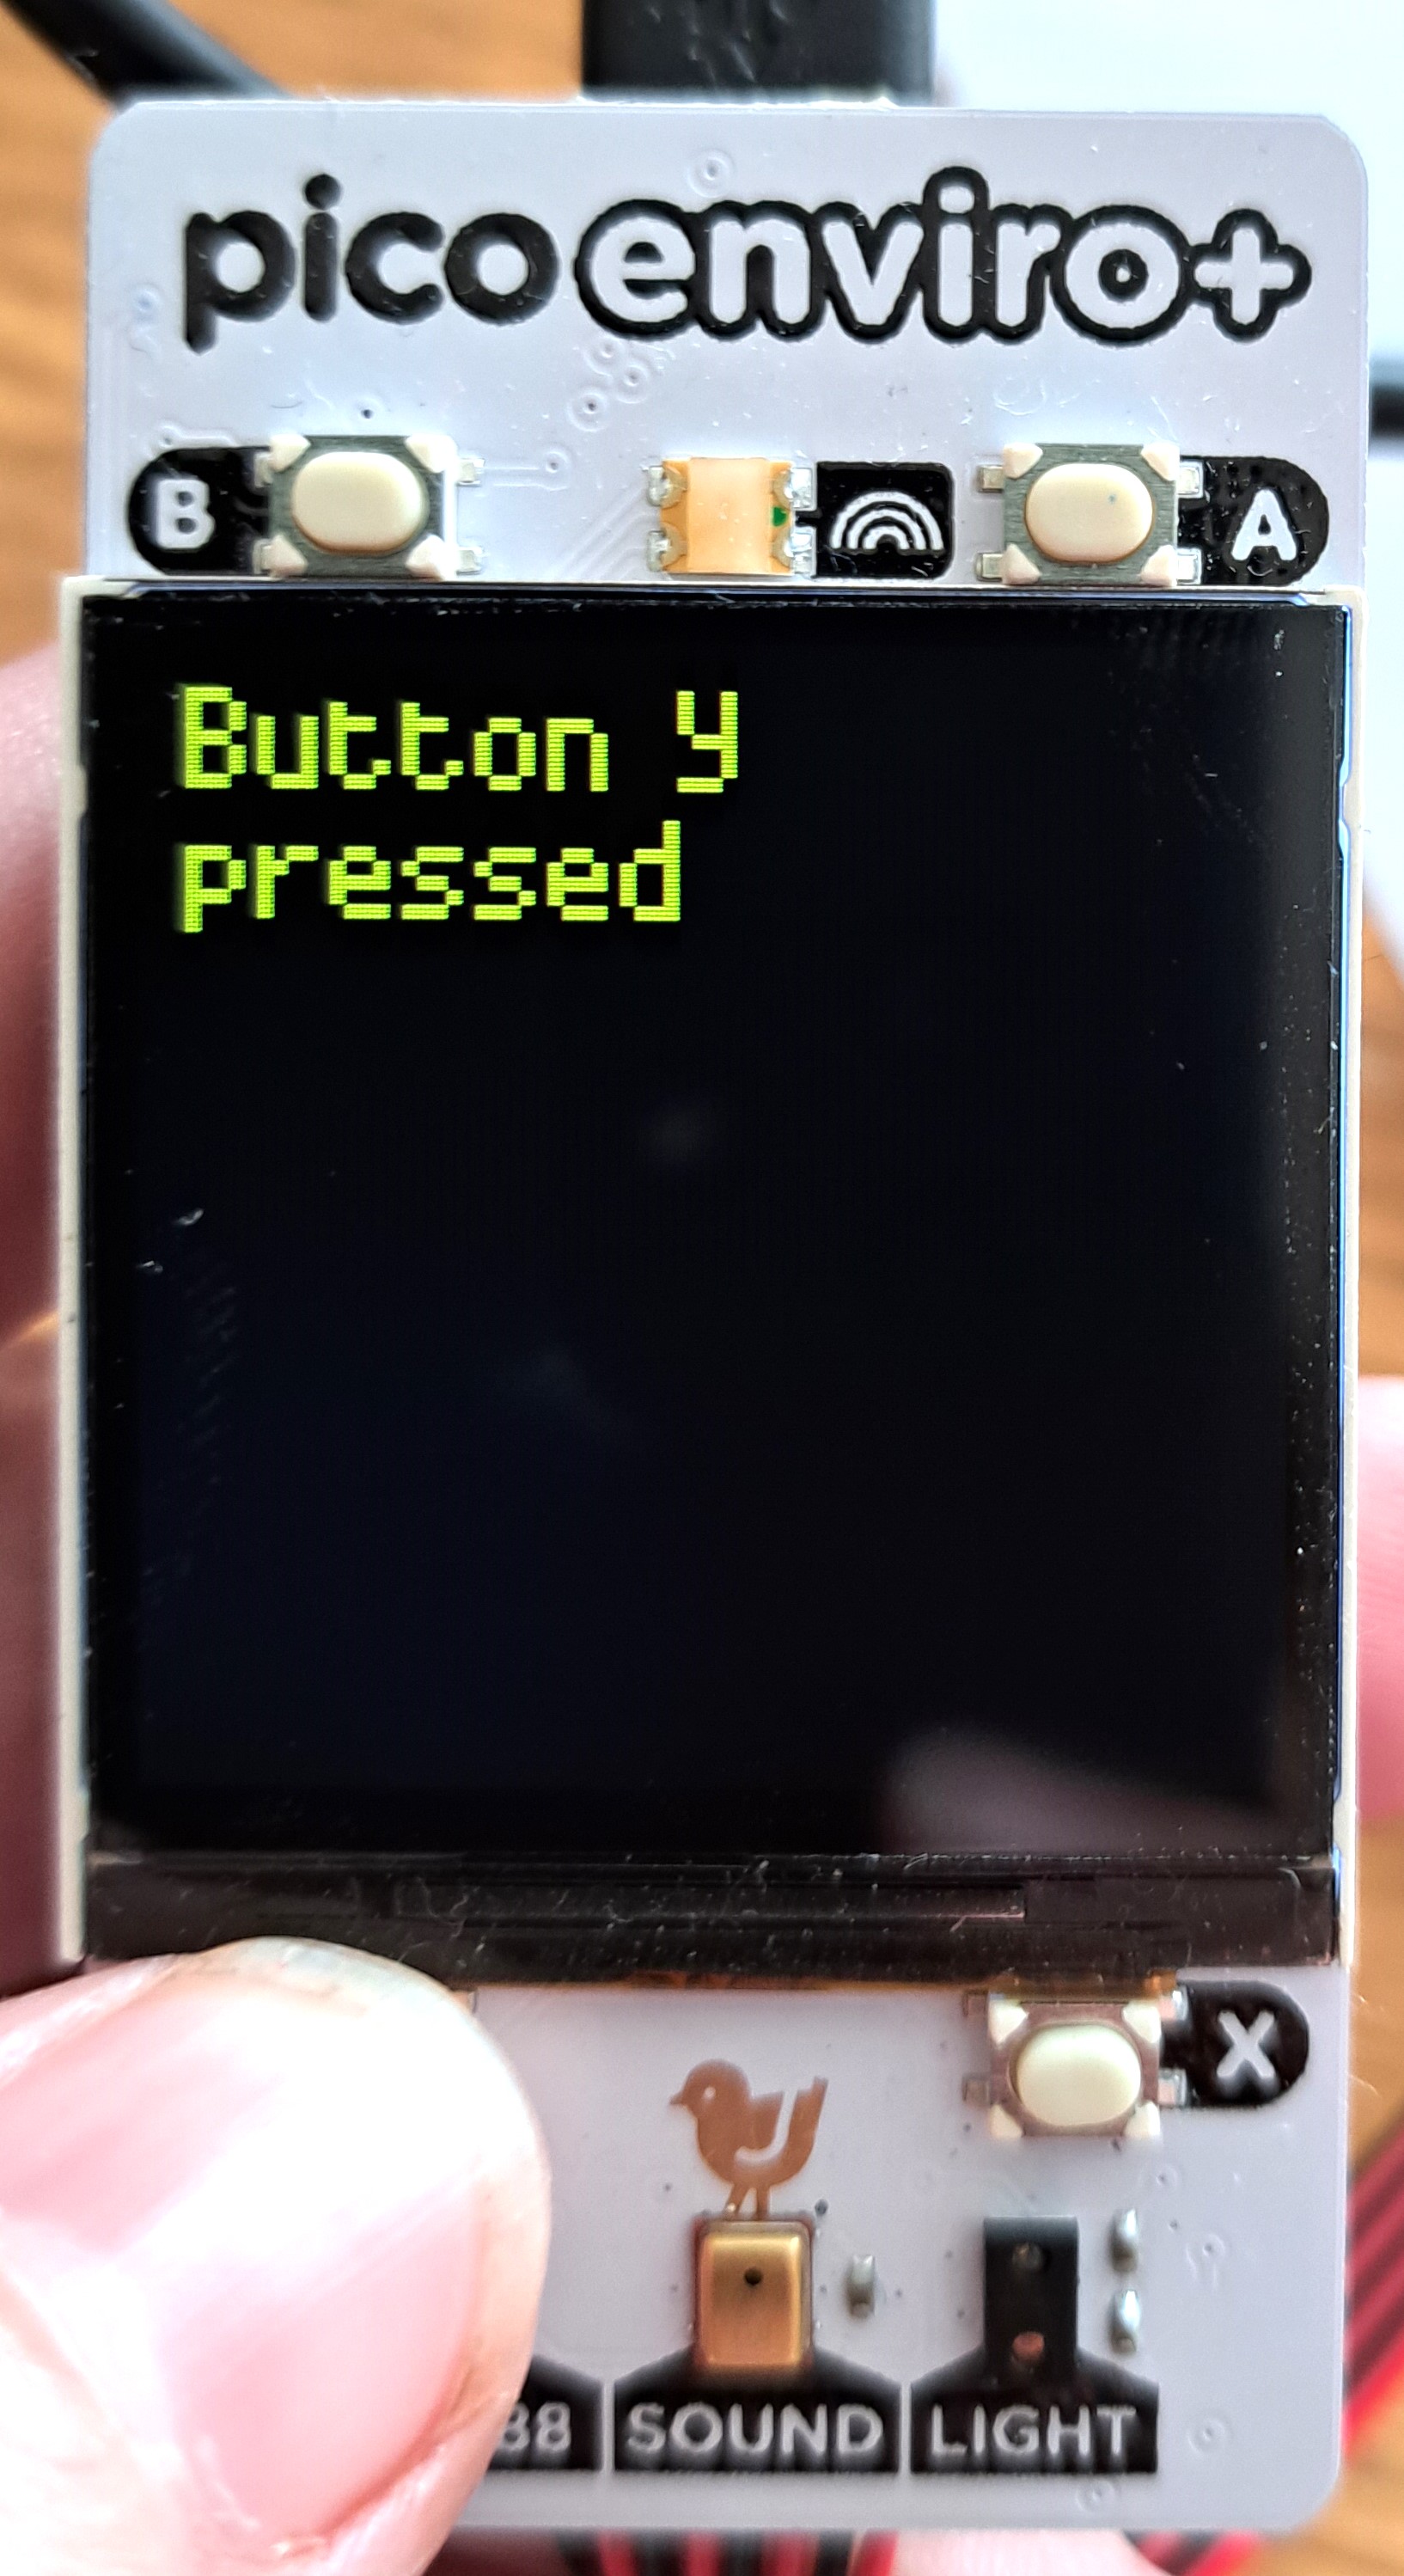 Button pressed